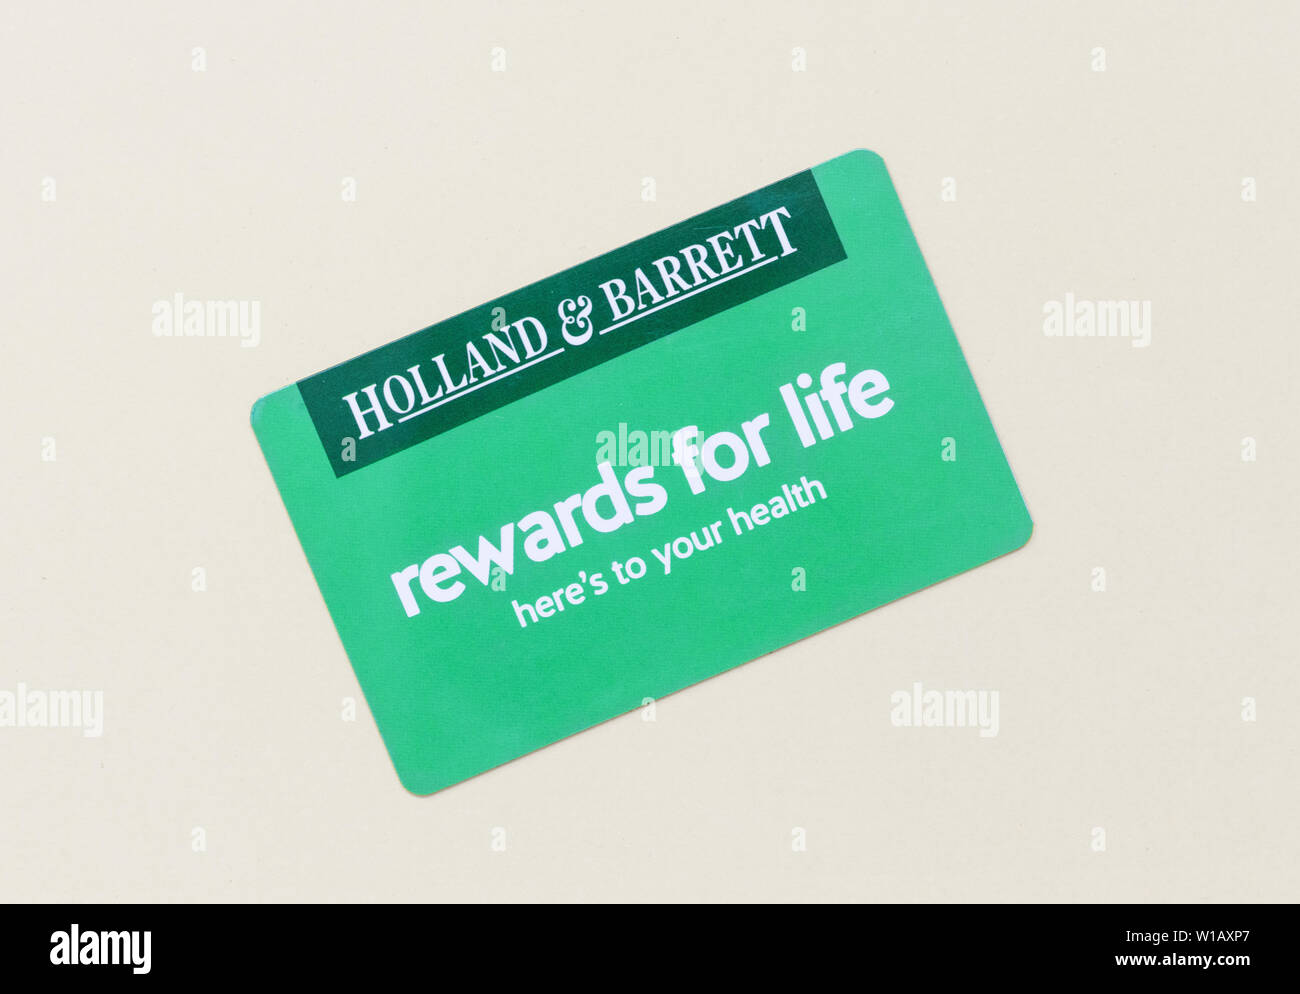 London / UK - 1 Luglio 2019 - Olanda e Barrett cliente card rewards. Holland & Barrett è una catena di salute negozi di alimentari con oltre 1.300 Foto Stock